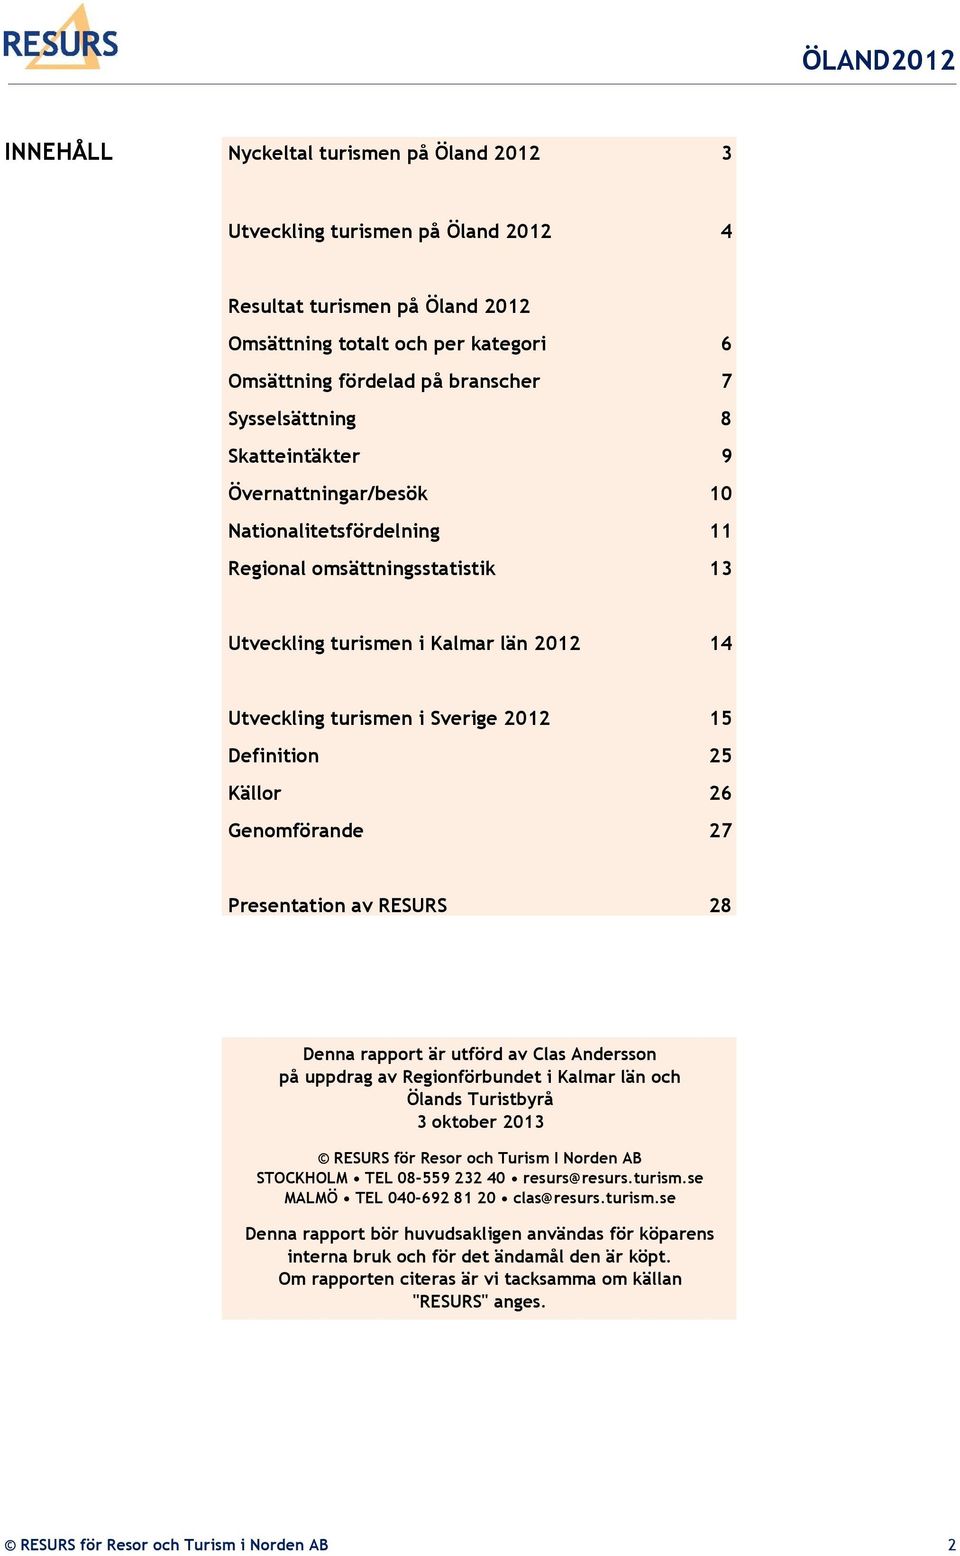 Källor 26 Genomförande 27 Presentation av RESURS 28 Denna rapport är utförd av Clas Andersson på uppdrag av Regionförbundet i Kalmar län och Ölands Turistbyrå 3 oktober 2013 RESURS för Resor och